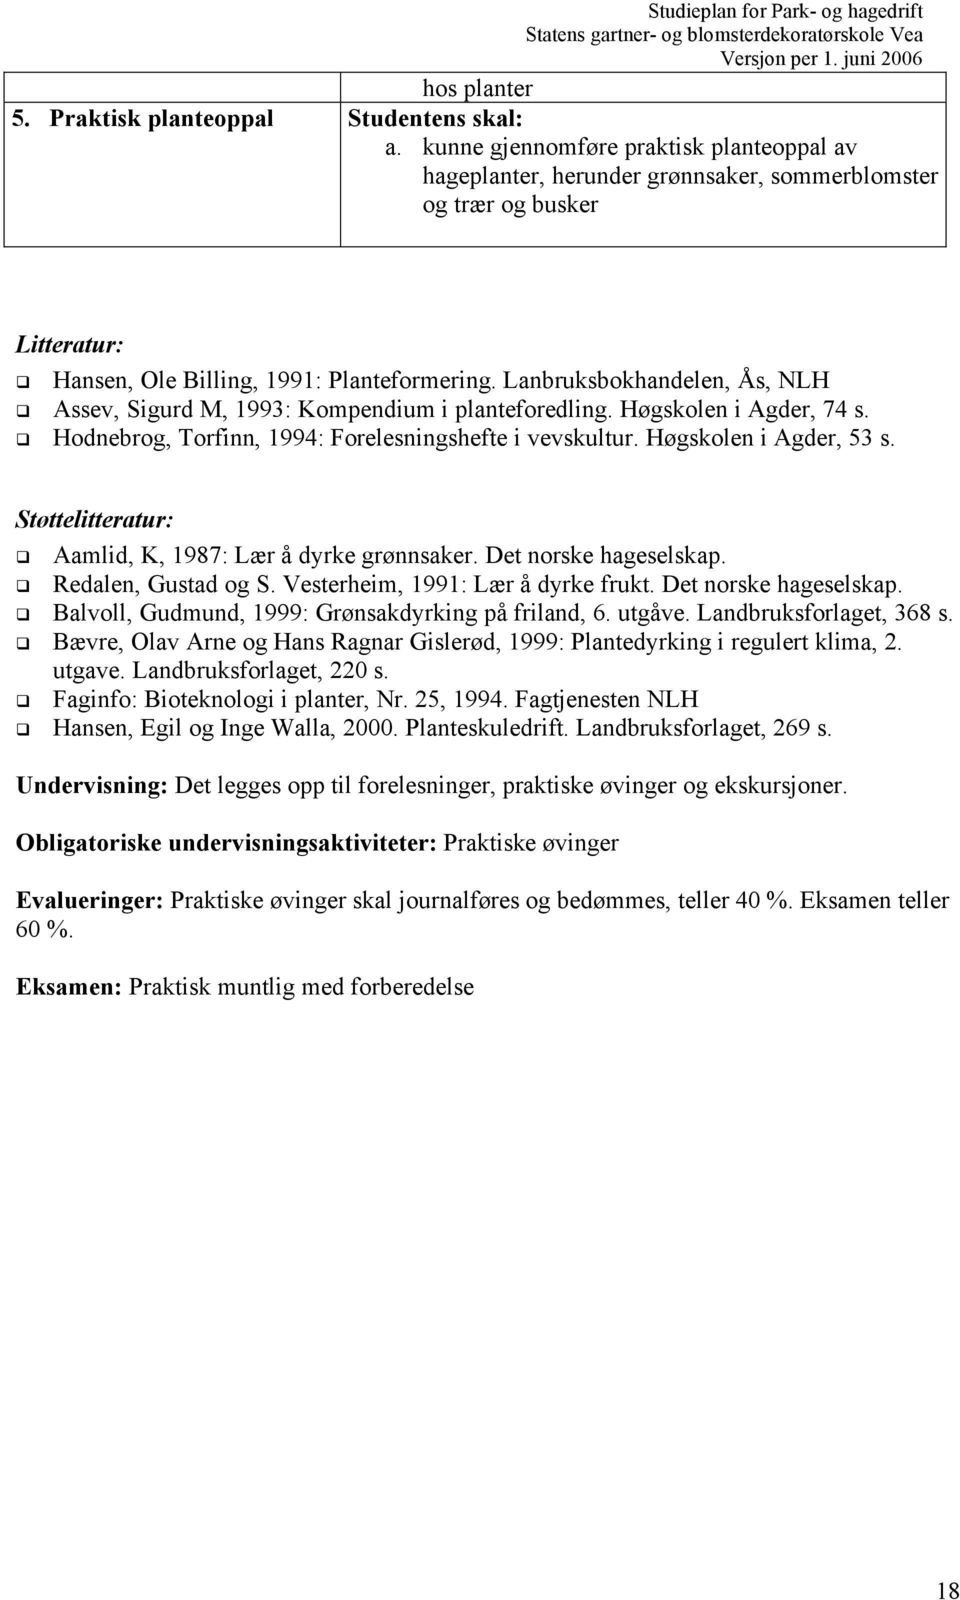 Lanbruksbokhandelen, Ås, NLH Assev, Sigurd M, 1993: Kompendium i planteforedling. Høgskolen i Agder, 74 s. Hodnebrog, Torfinn, 1994: Forelesningshefte i vevskultur. Høgskolen i Agder, 53 s.